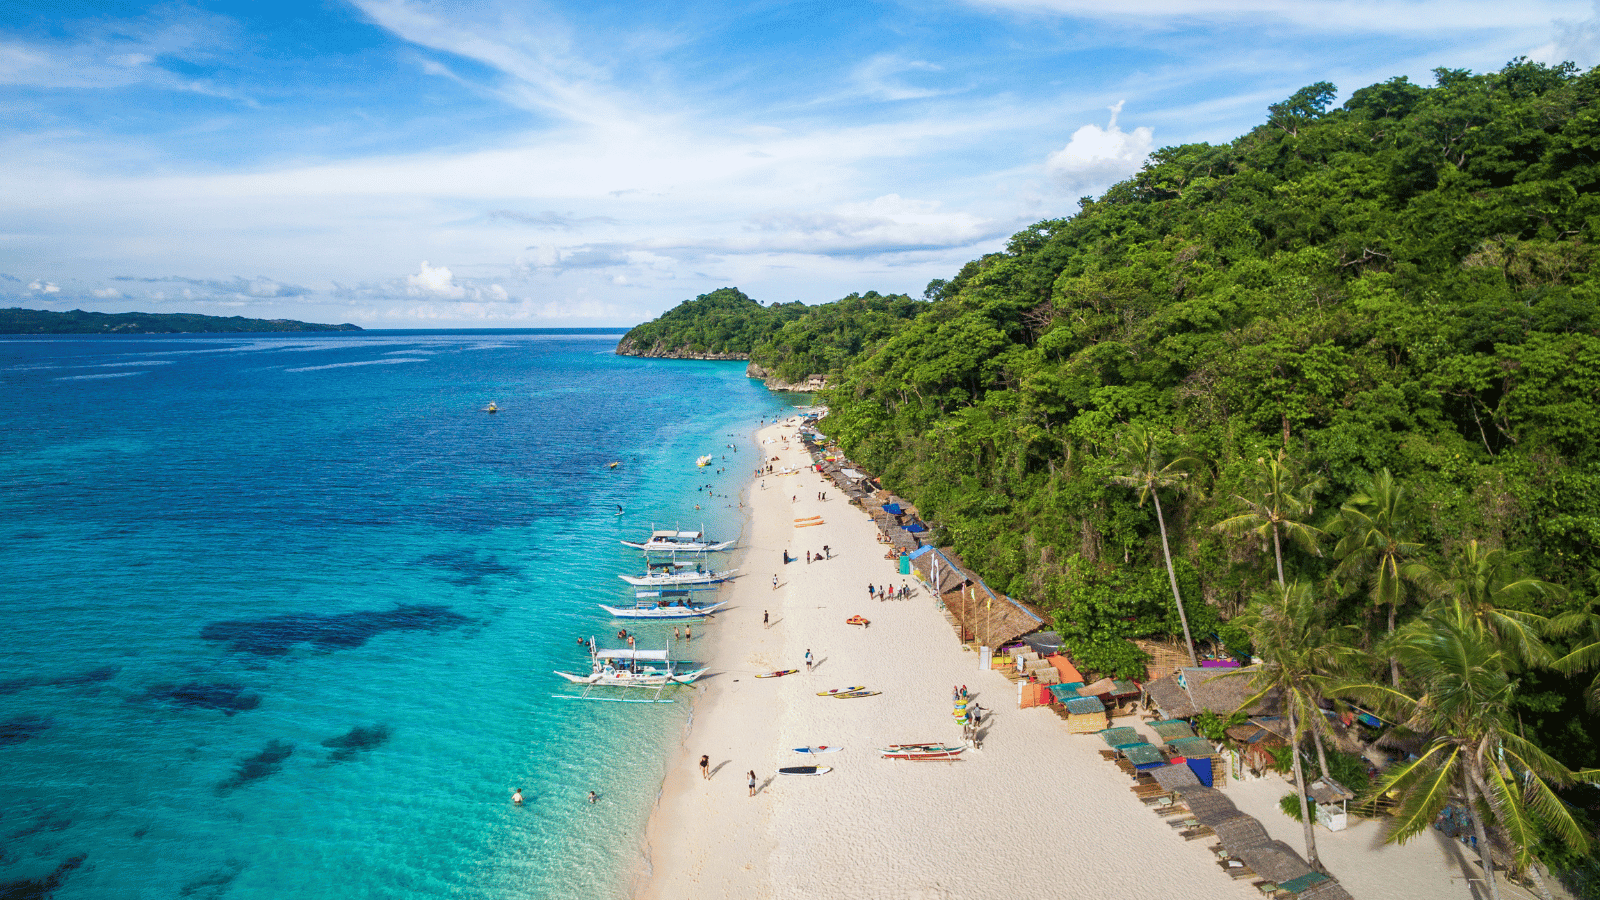 Boracay, Philippines